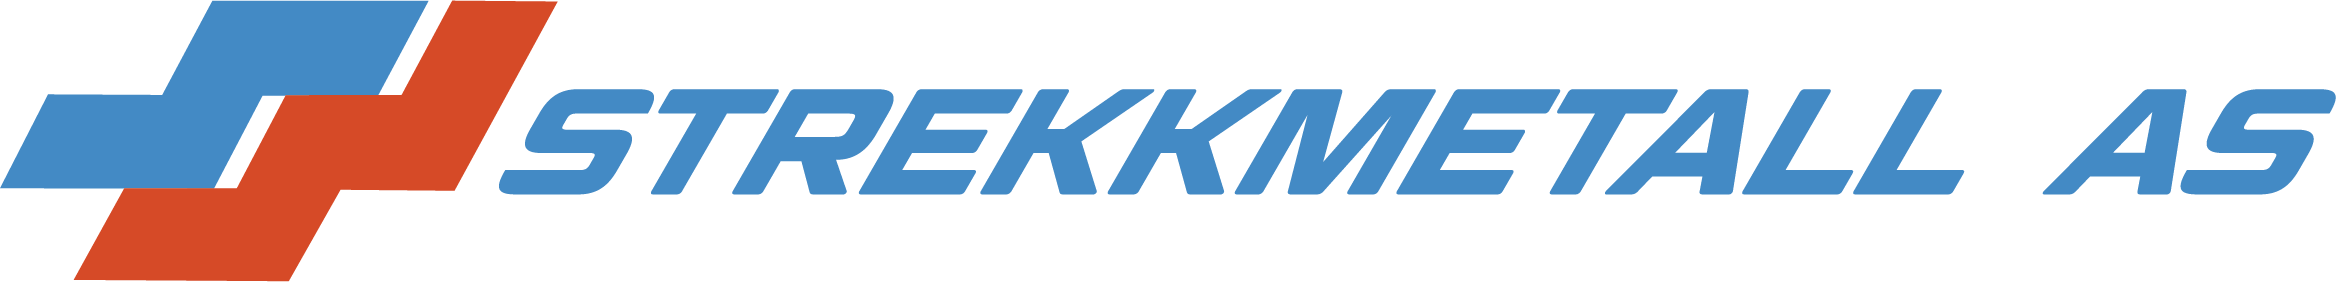 Logo STREKKMETALL AS